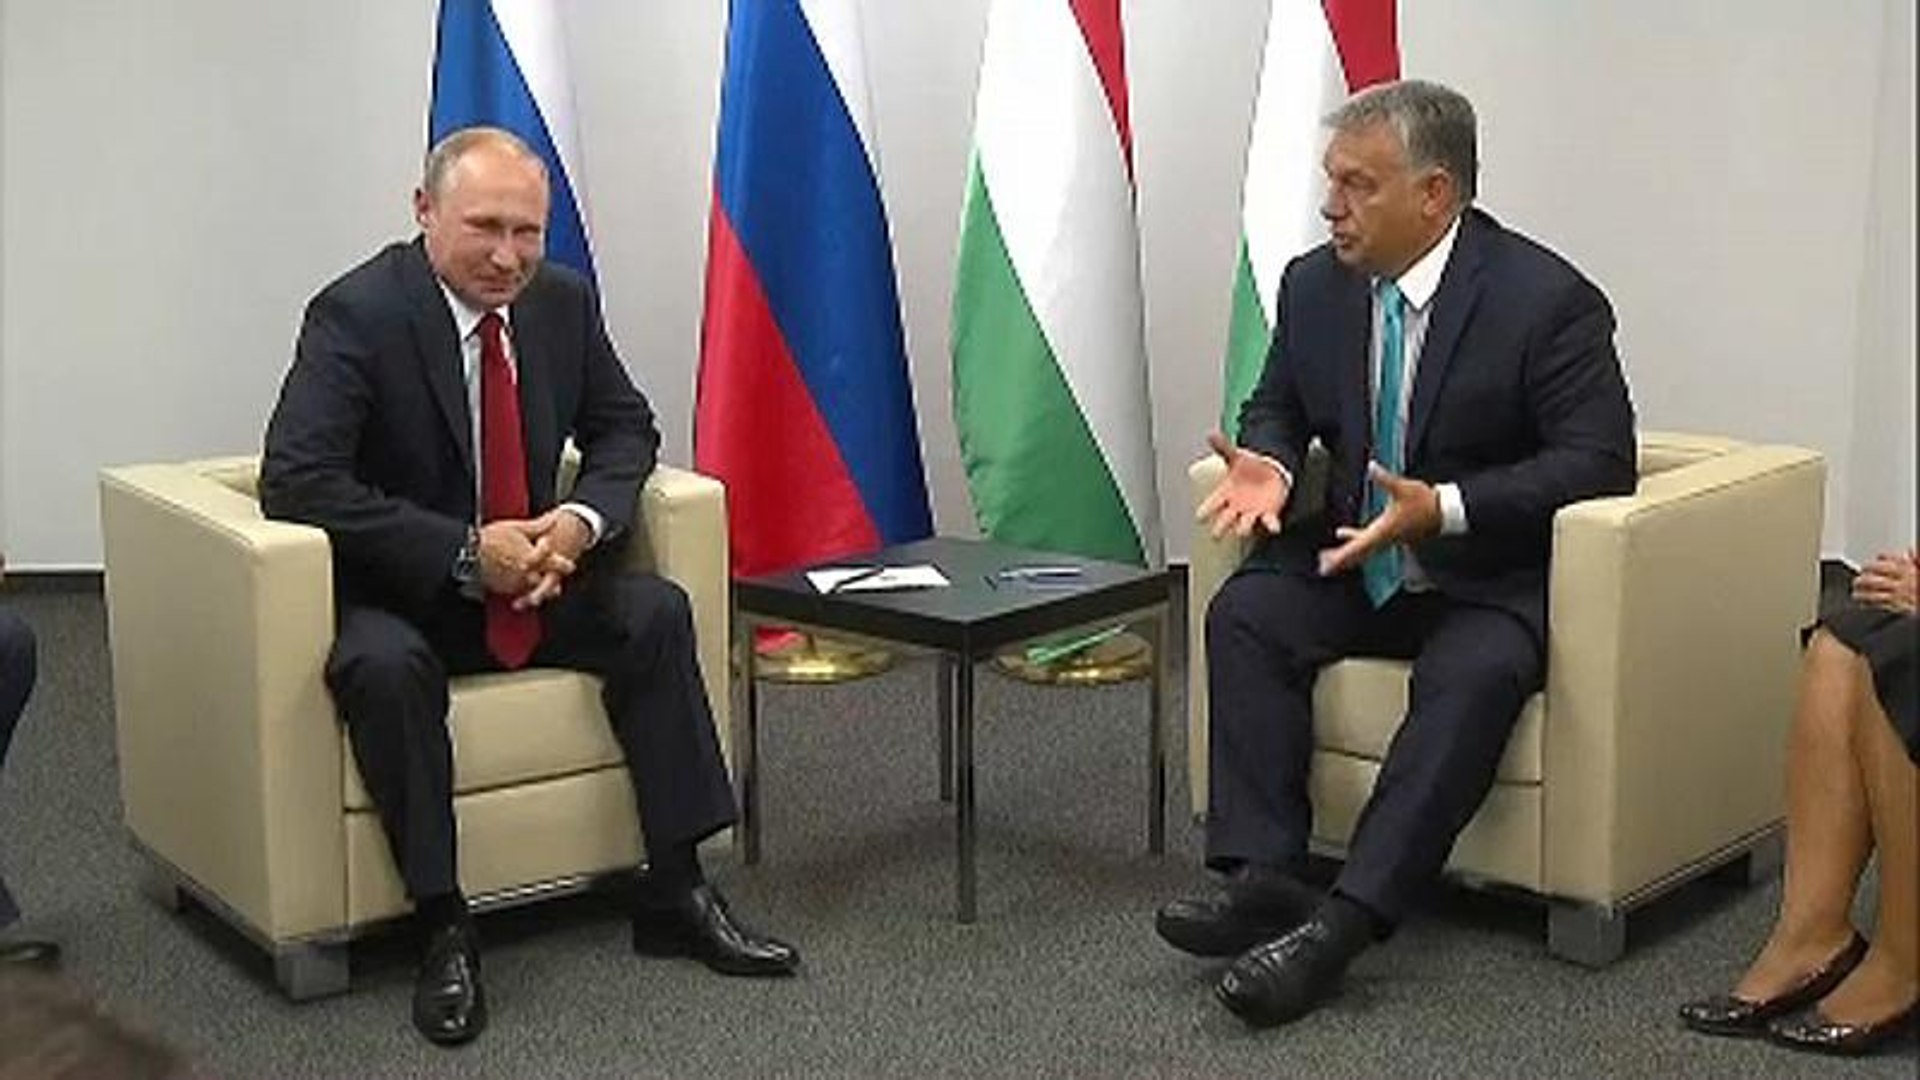 Újabb Orbán-Putyin találkozó Budapesten